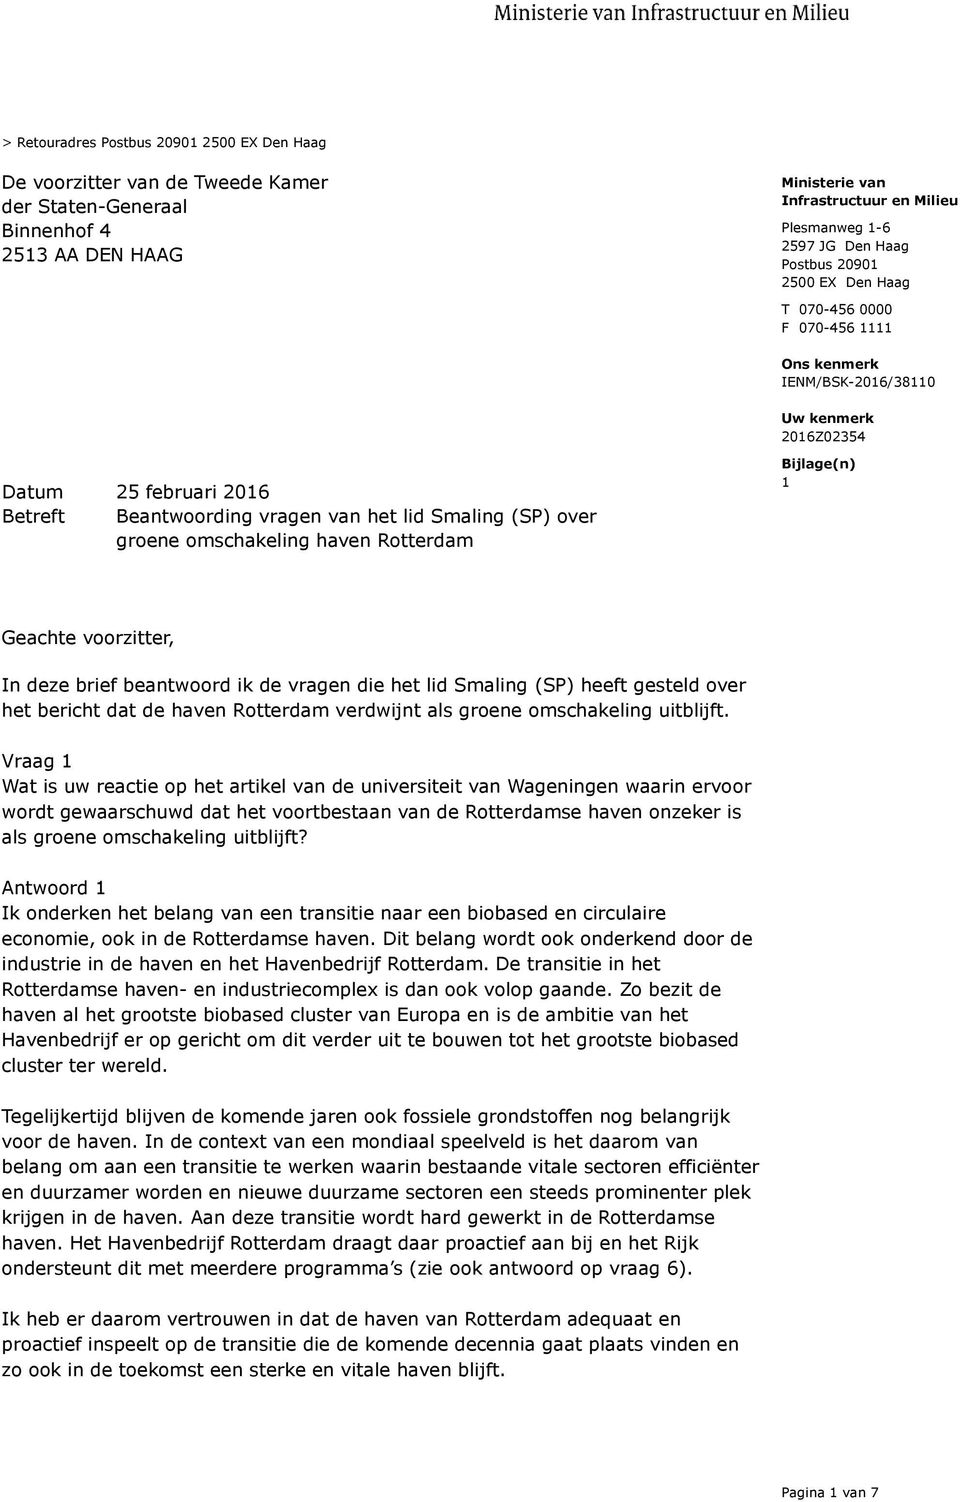 voorzitter, In deze brief beantwoord ik de vragen die het lid Smaling (SP) heeft gesteld over het bericht dat de haven Rotterdam verdwijnt als groene omschakeling uitblijft.